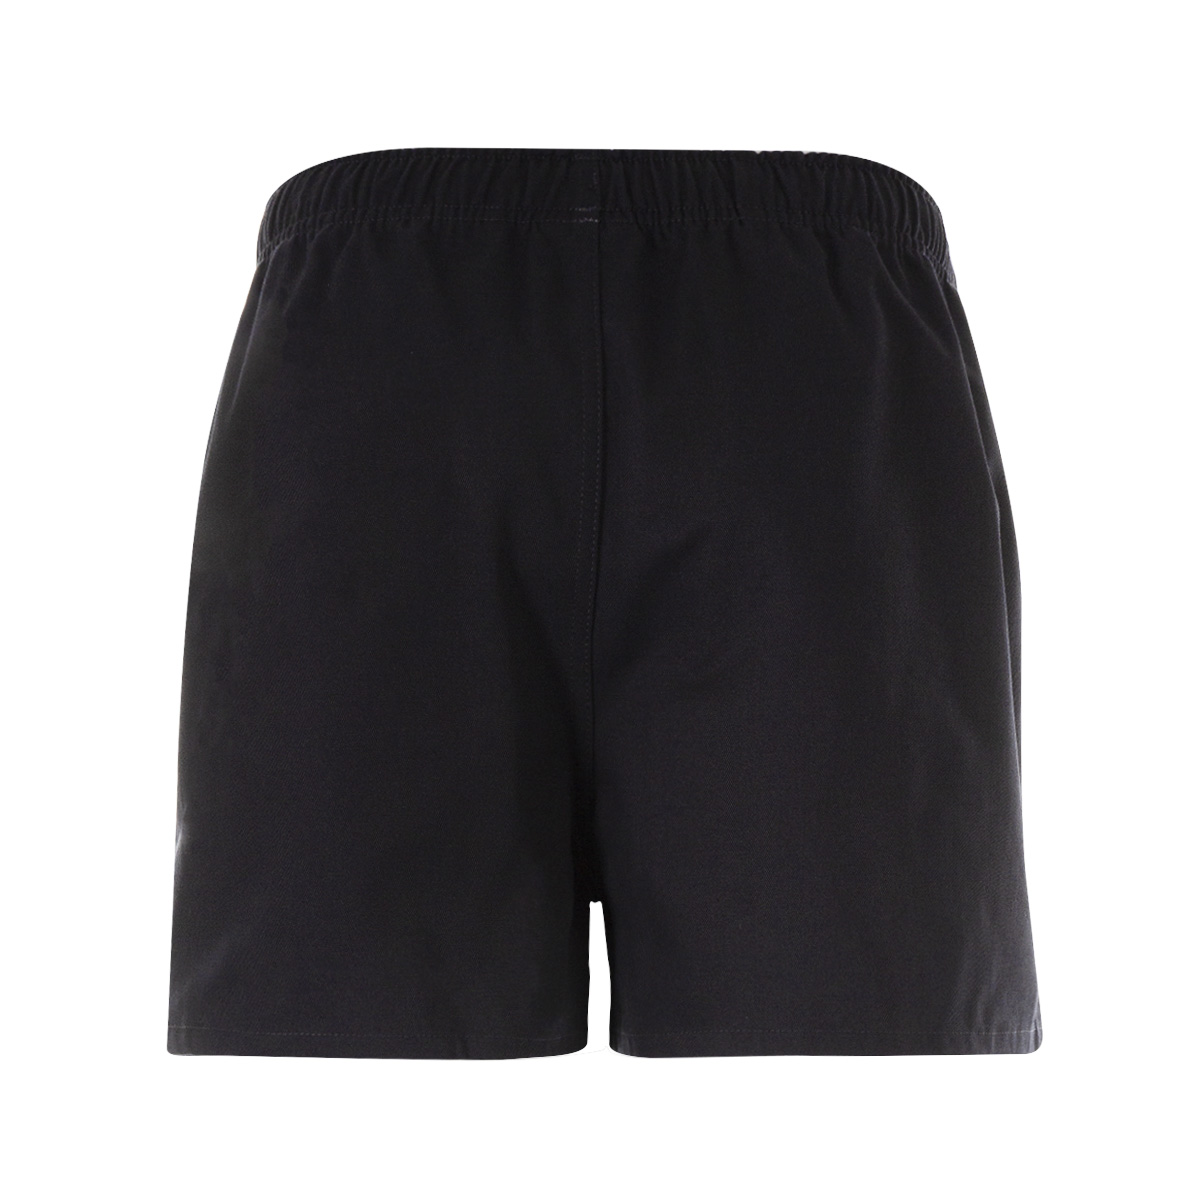 Men's Black Athletic Shorts Bathing Suit (RBG Edition) | CPR Etc